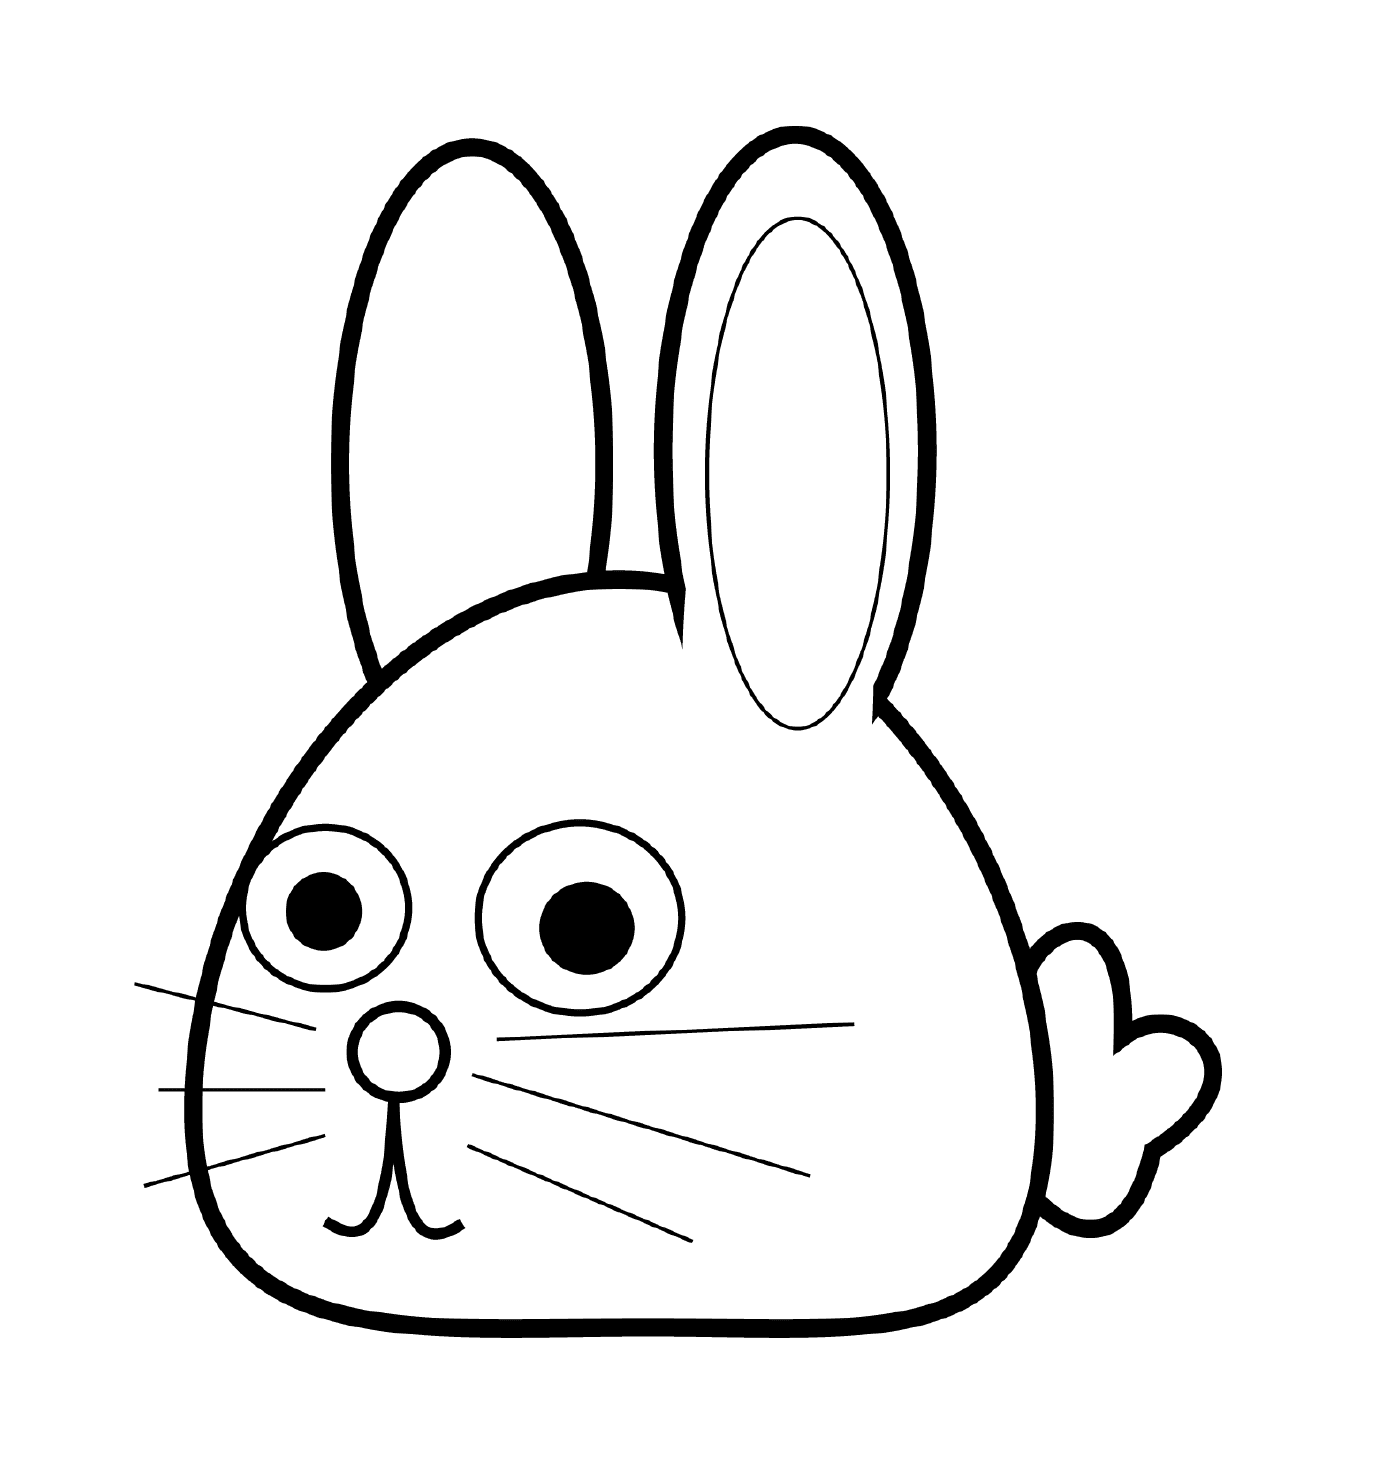  Rabbit head adorable kawaii 